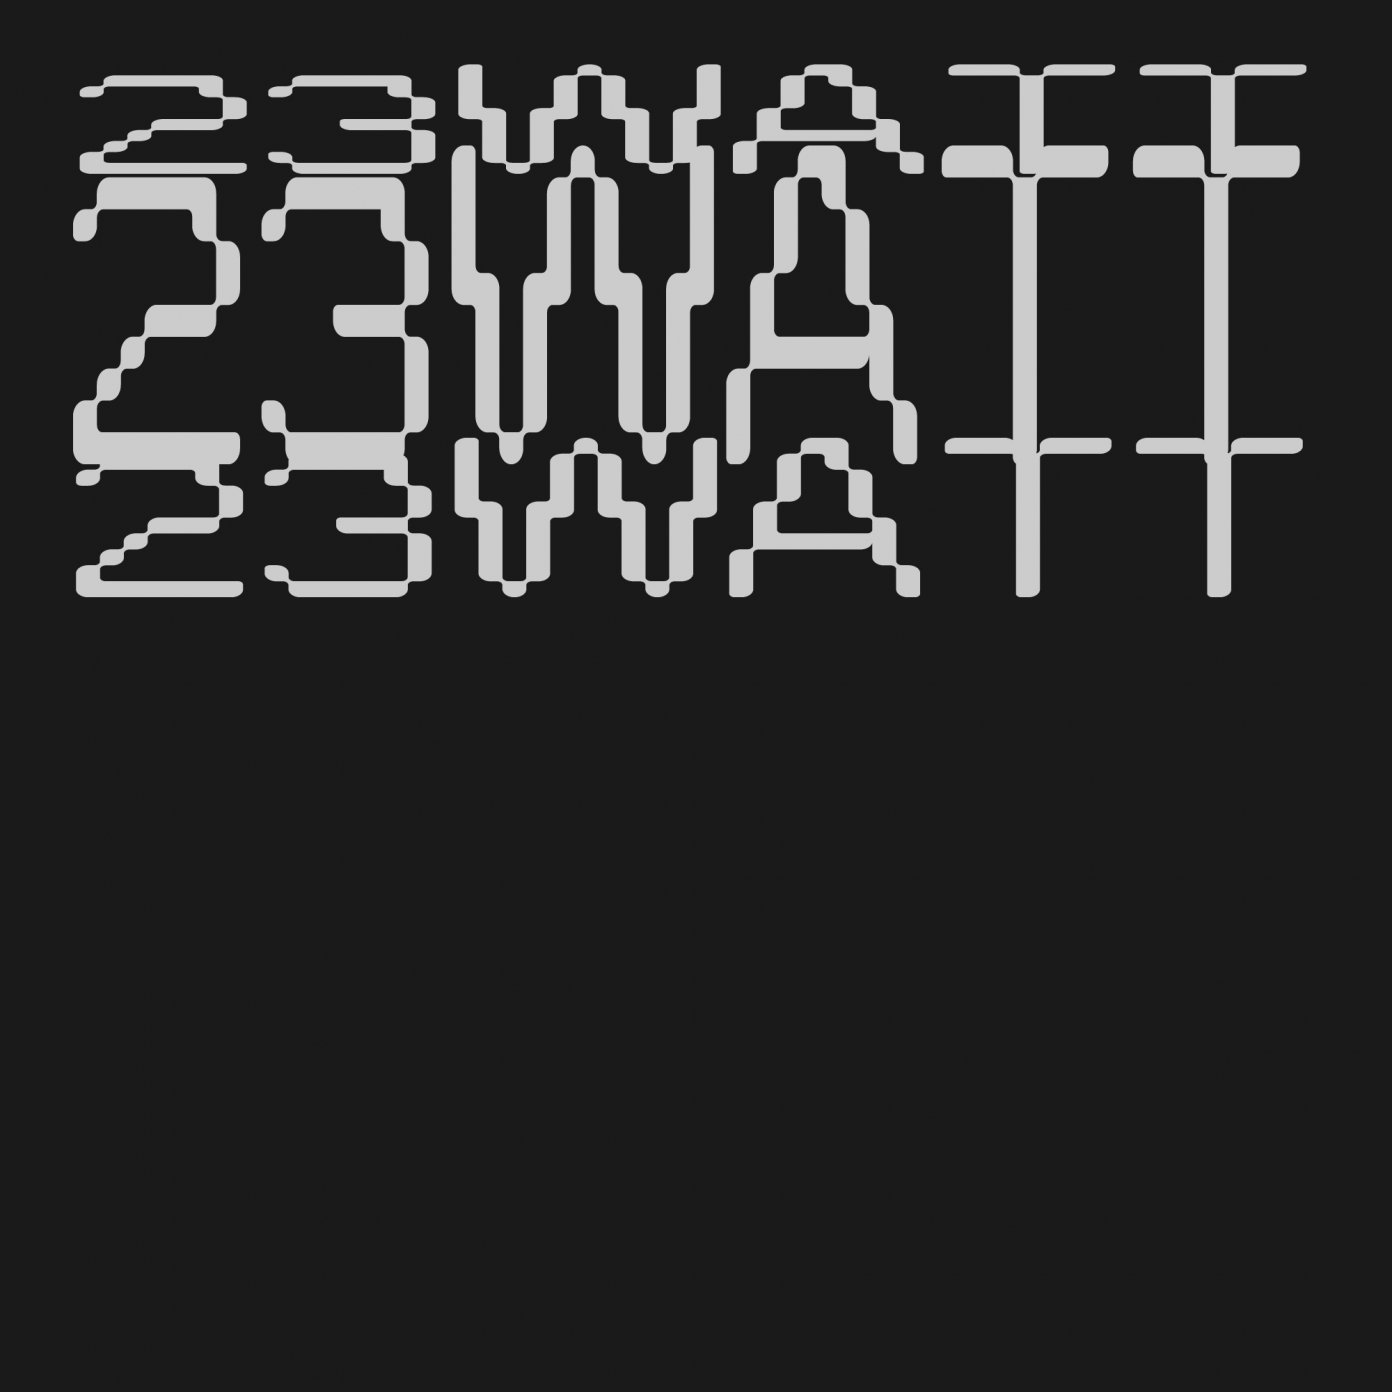 23 Watt - Mostra 